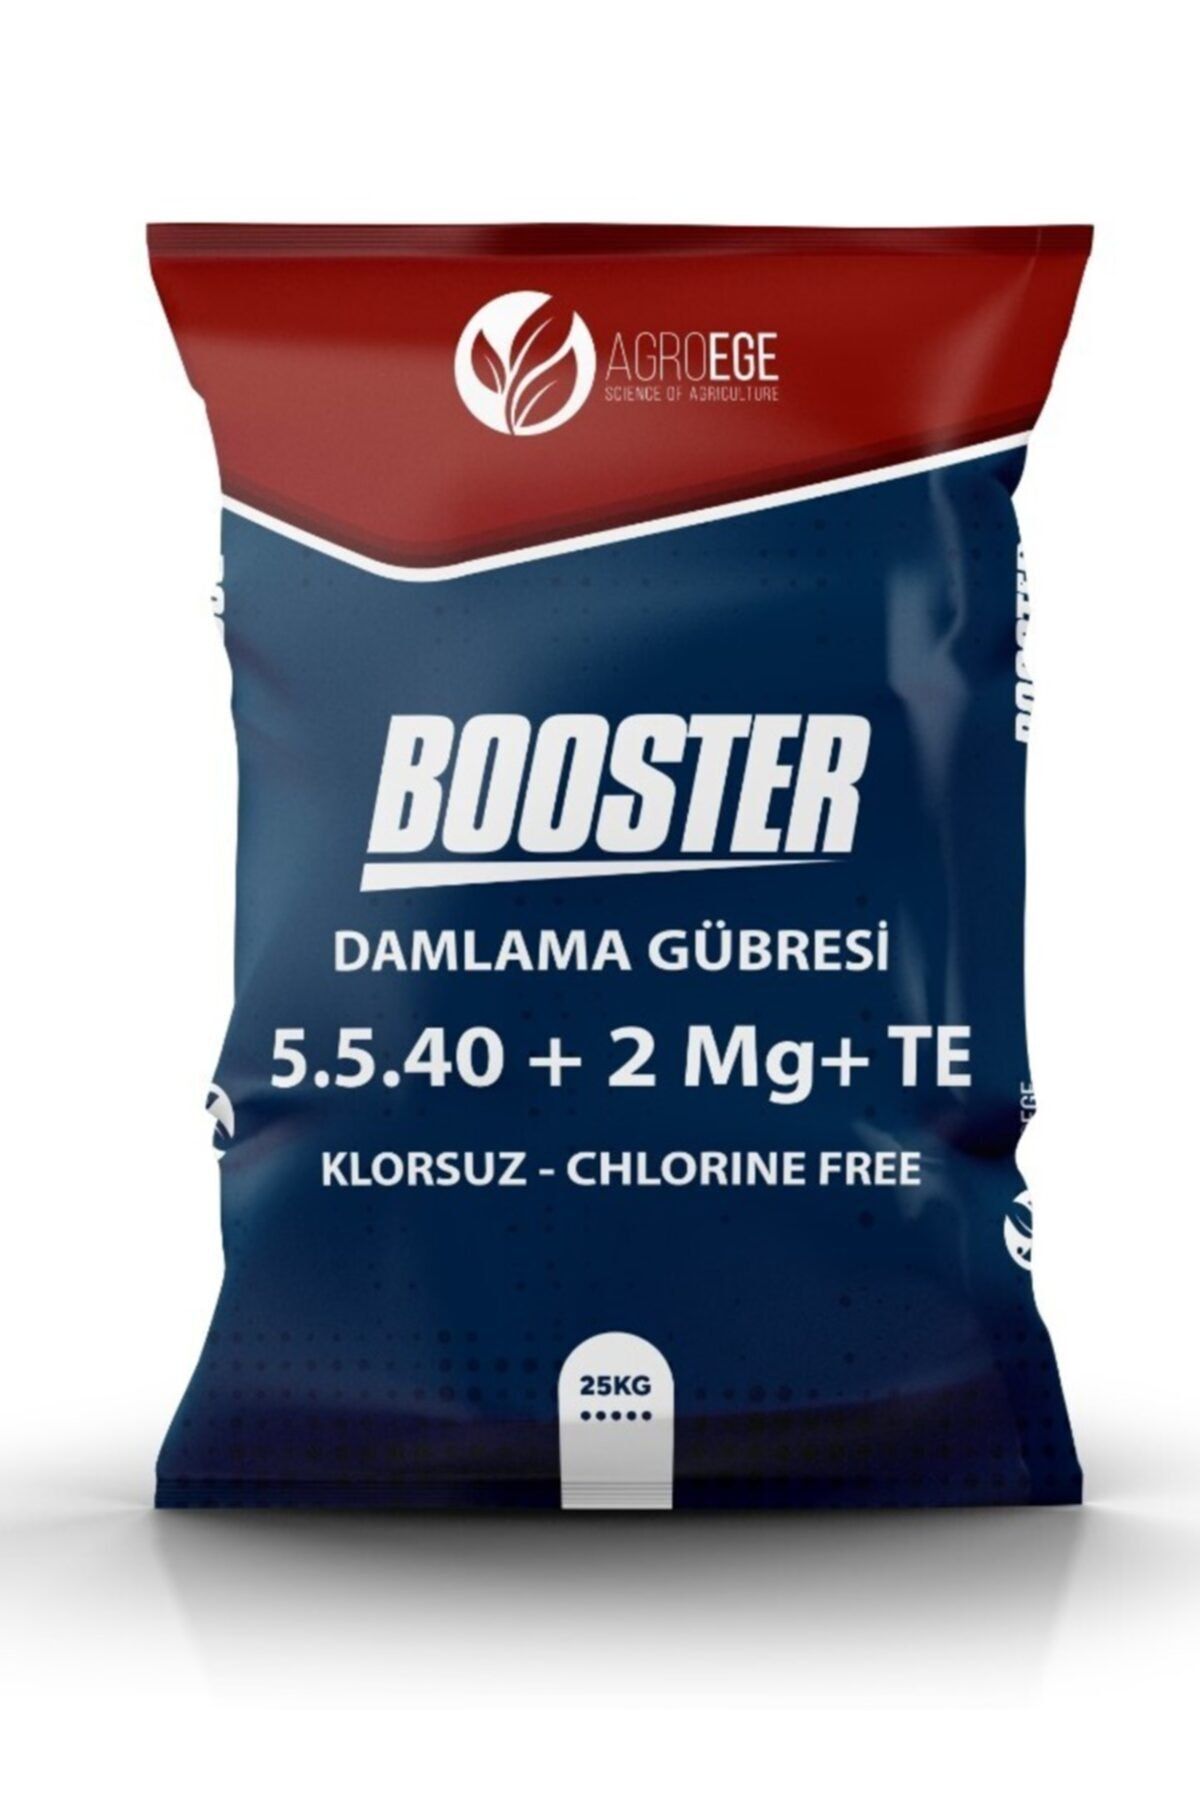 AGROEGE Boosteer 5-5-40 + 2mg +me Klorsuz Damlama Gübresi